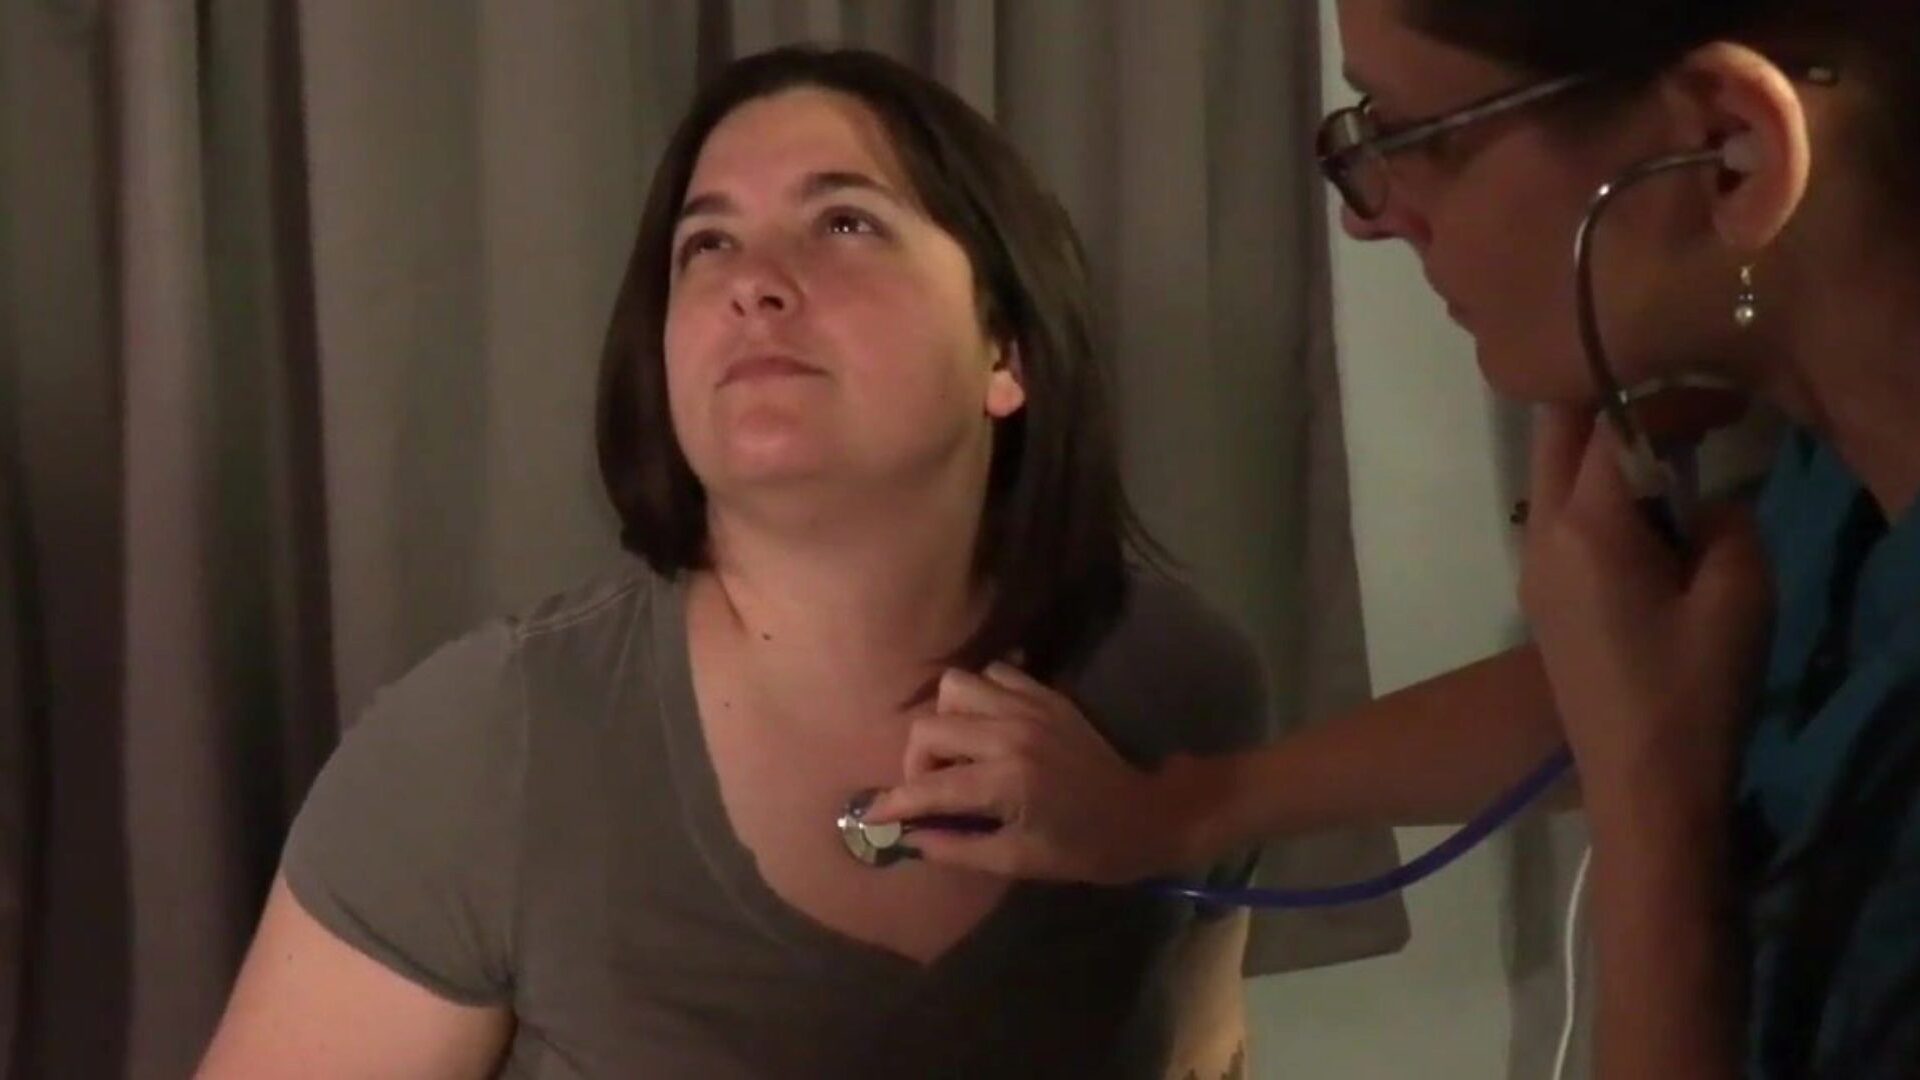 sykepleier pukkler sin spesielle jenteklient bakfra